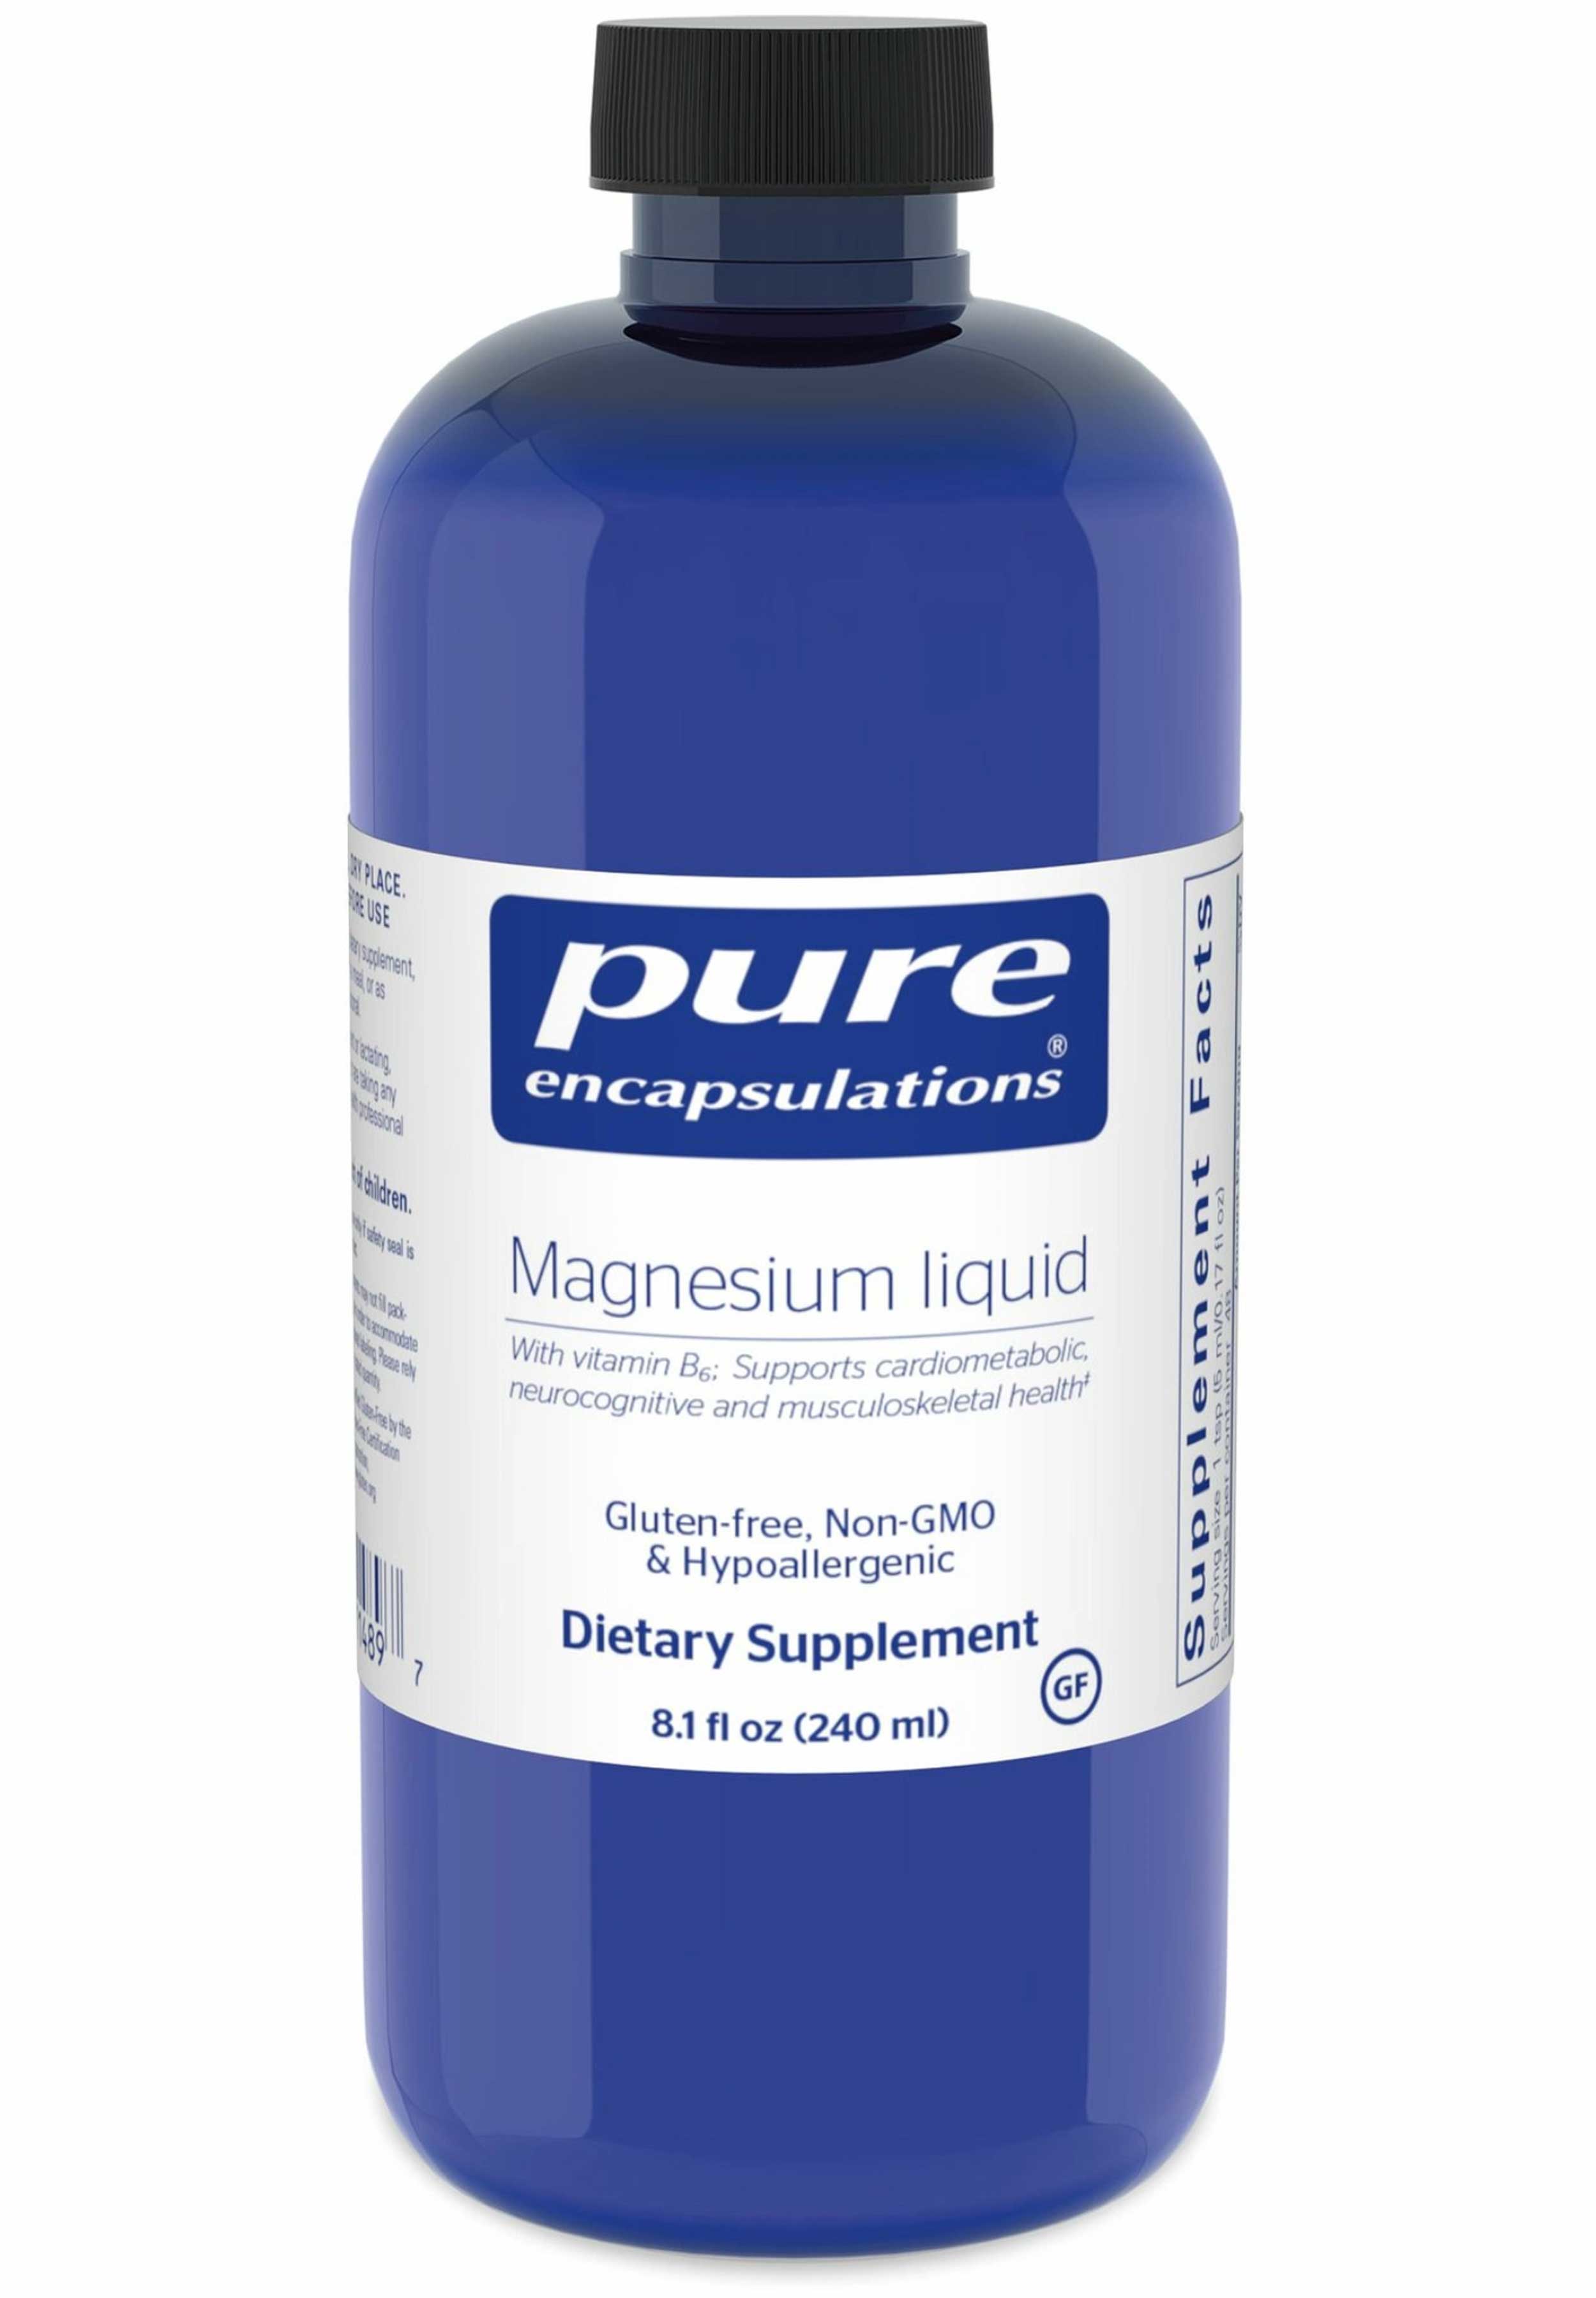 Pure Encapsulations Magnesium liquid (as Magnesium Citrate)